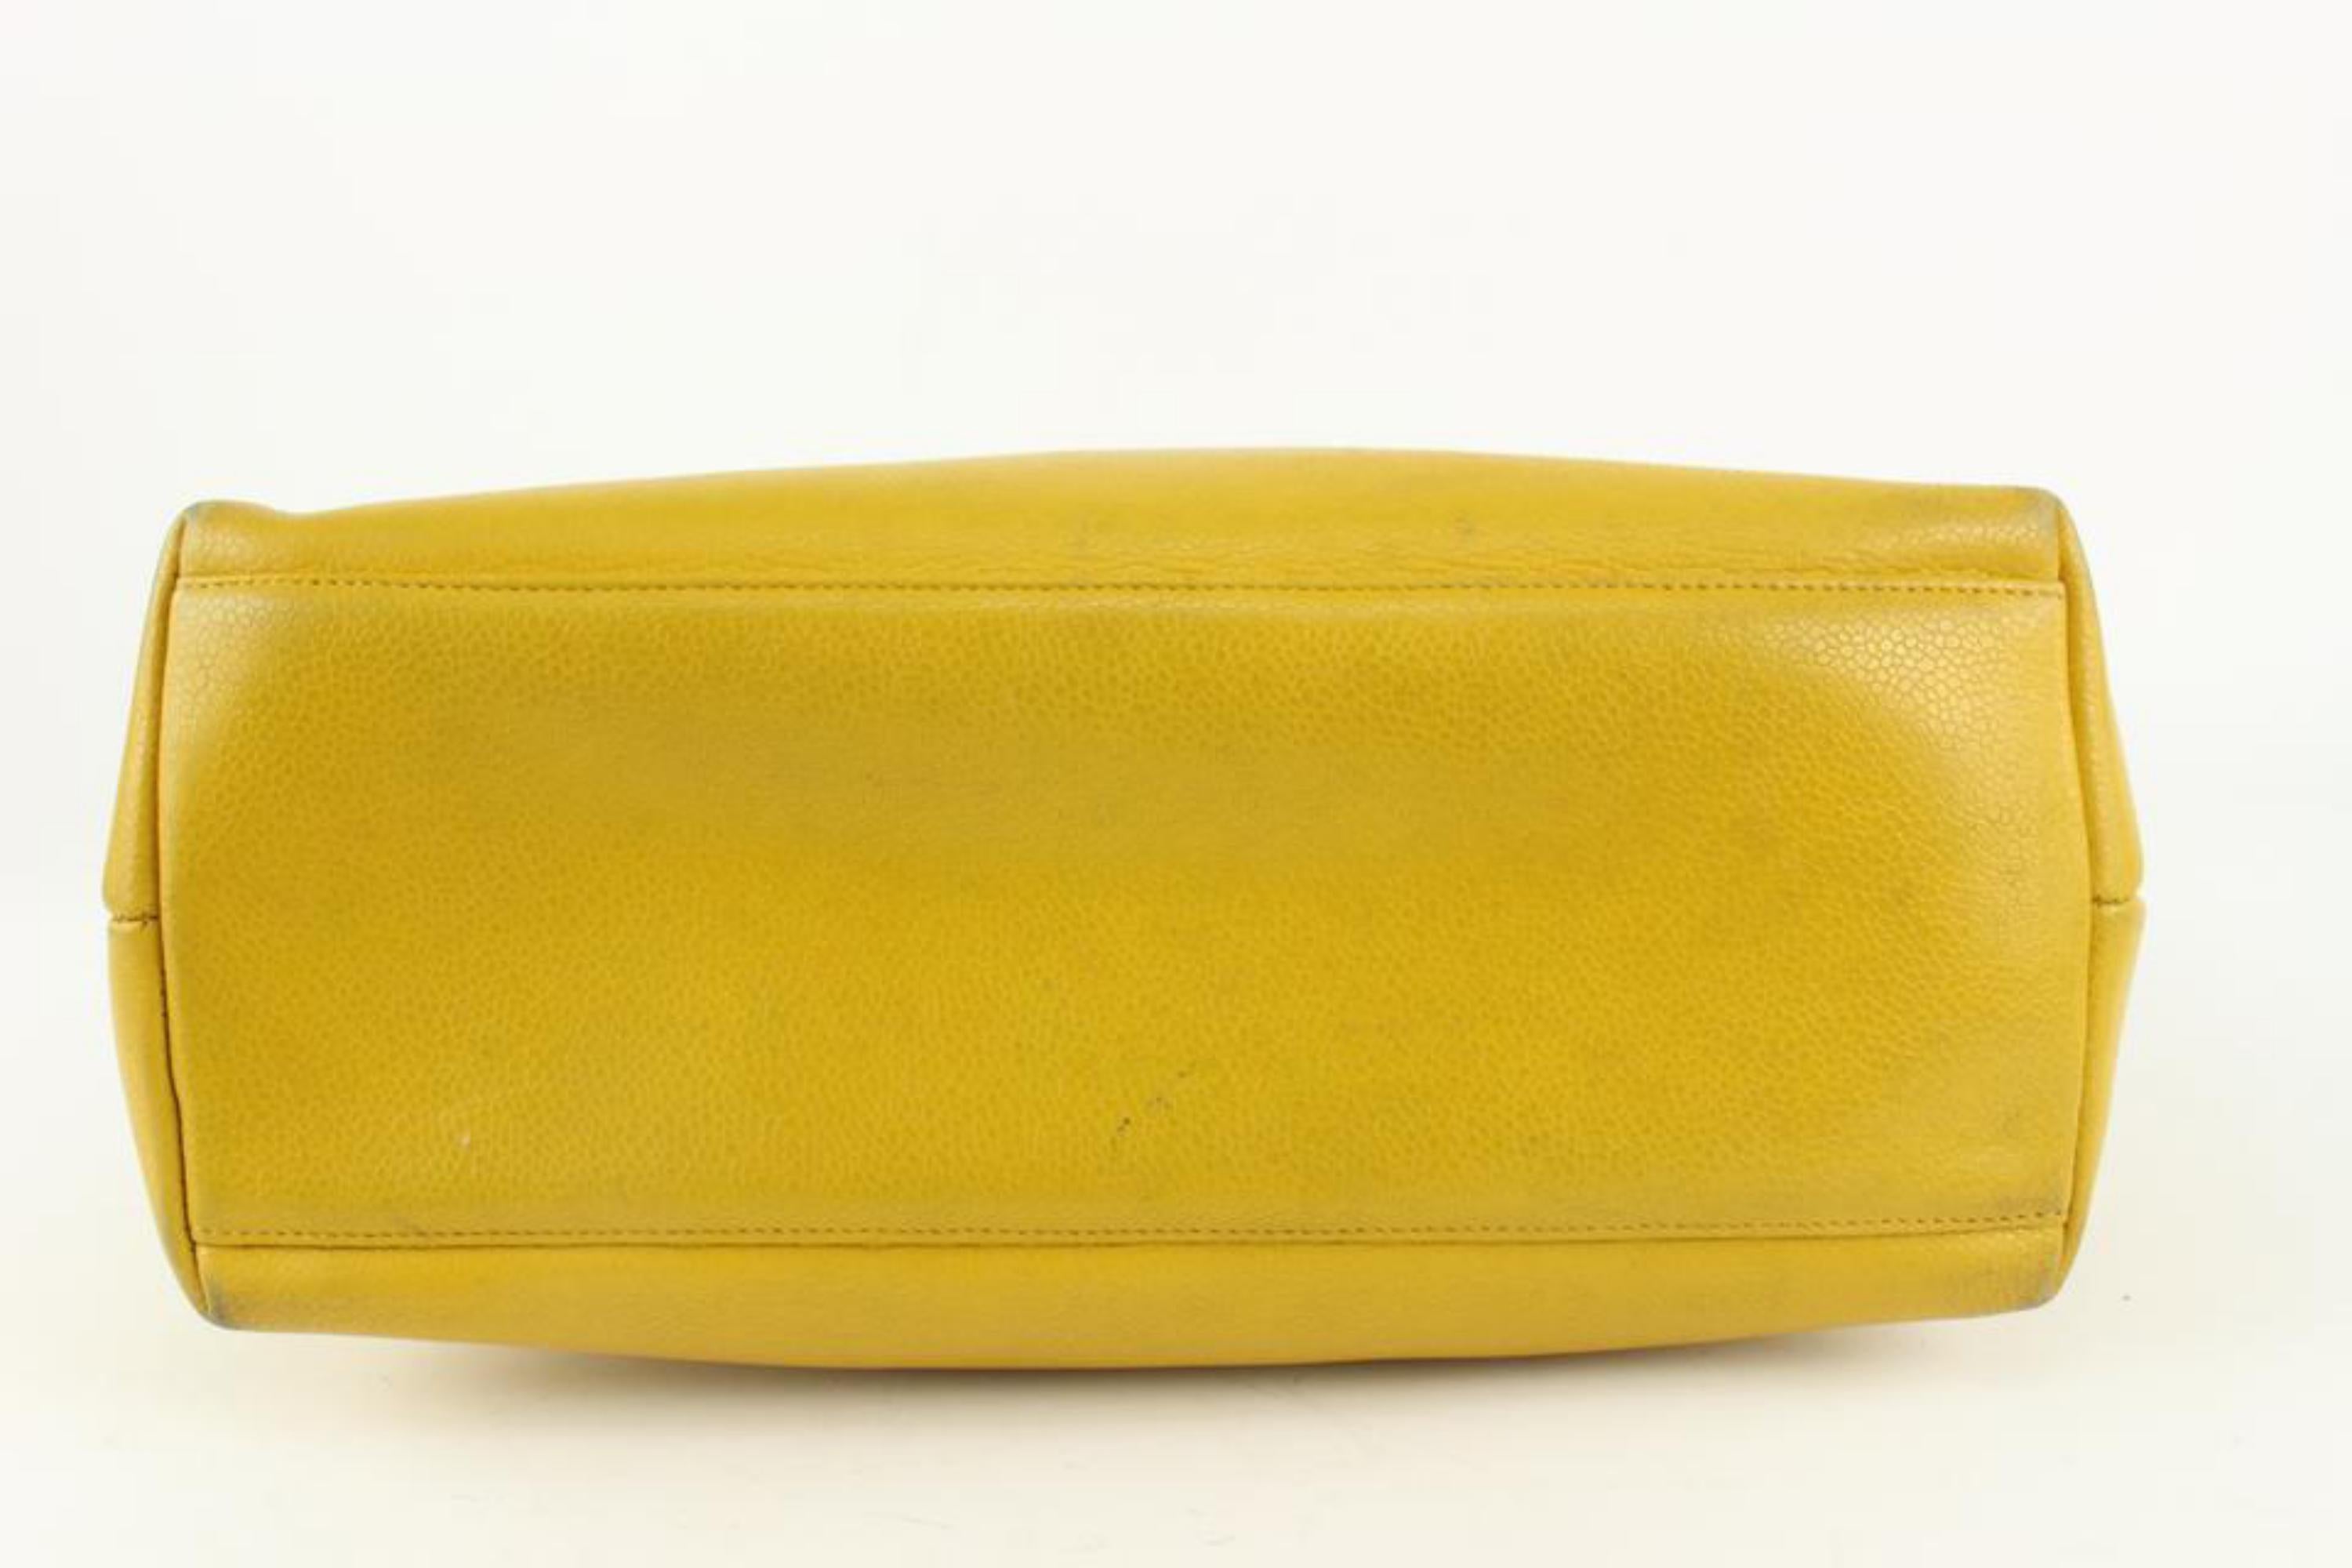 Chanel - Sac fourre-tout en cuir caviar jaune moutarde avec chaîne CC intemporelle, 1115c5 3